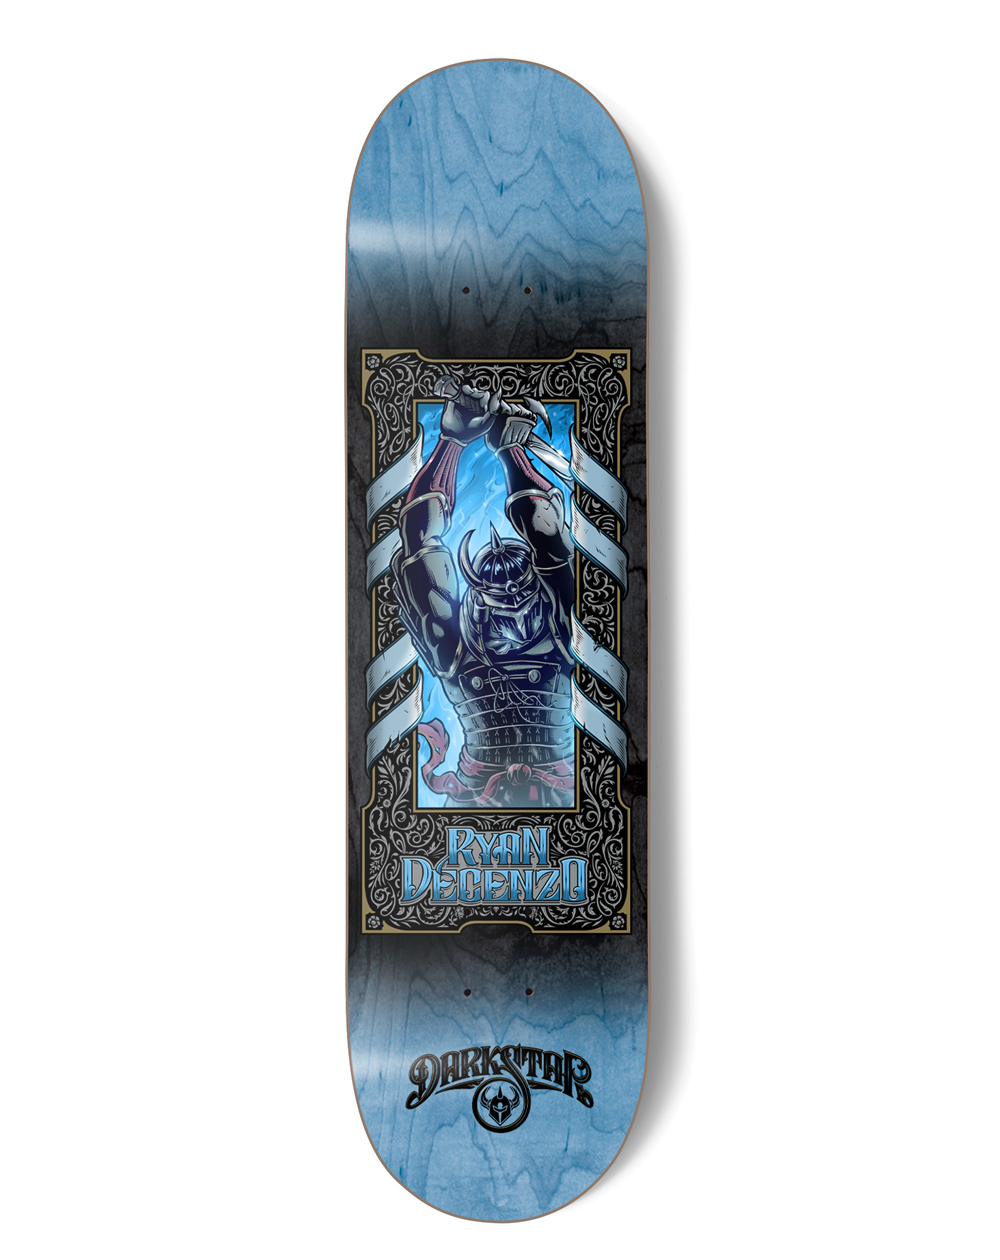 Darkstar Anthology Decenzo 8.375" Skateboard Deck